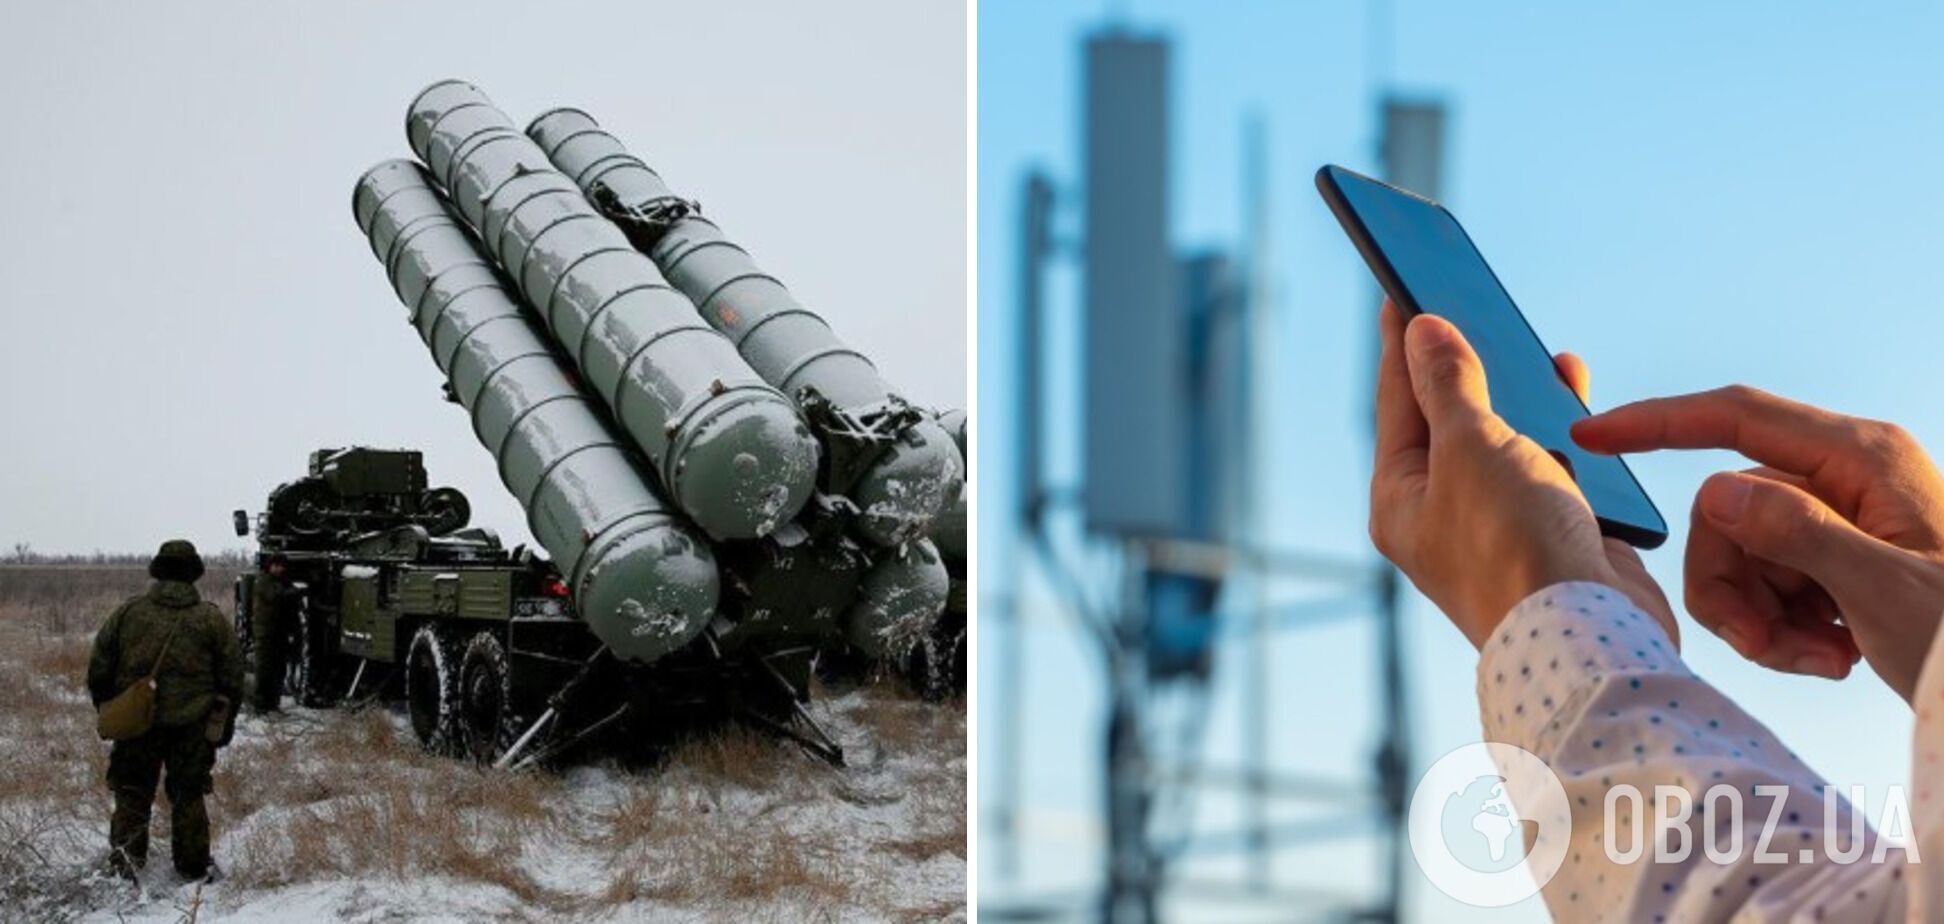 В России начали отключать интернет 4G для настройки ПВО: всплыли подробности